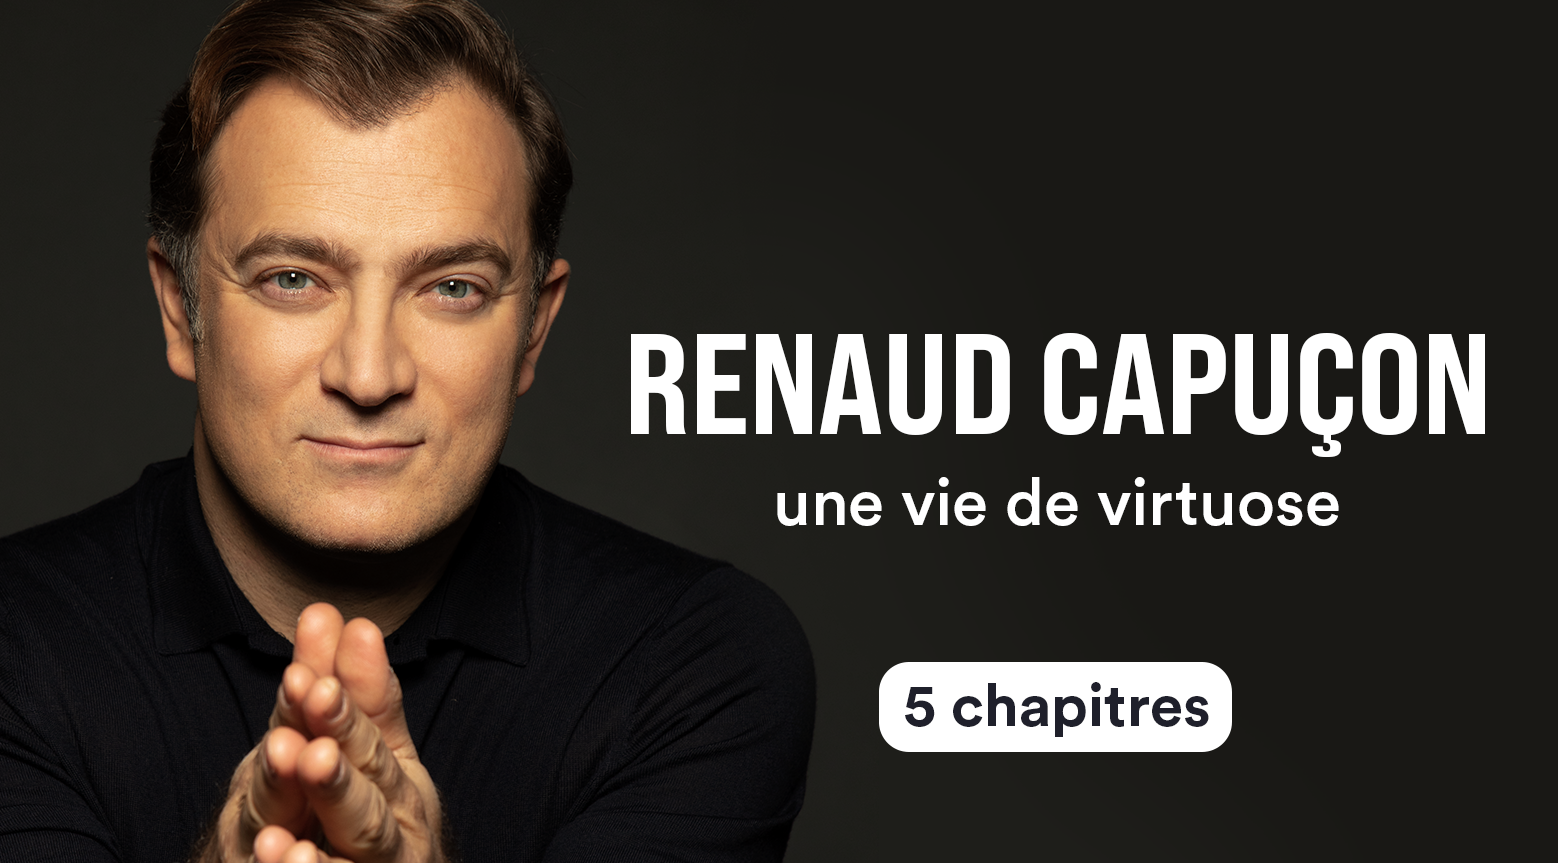 Renaud Capuçon, le virtuose qui a plusieurs cordes à son art